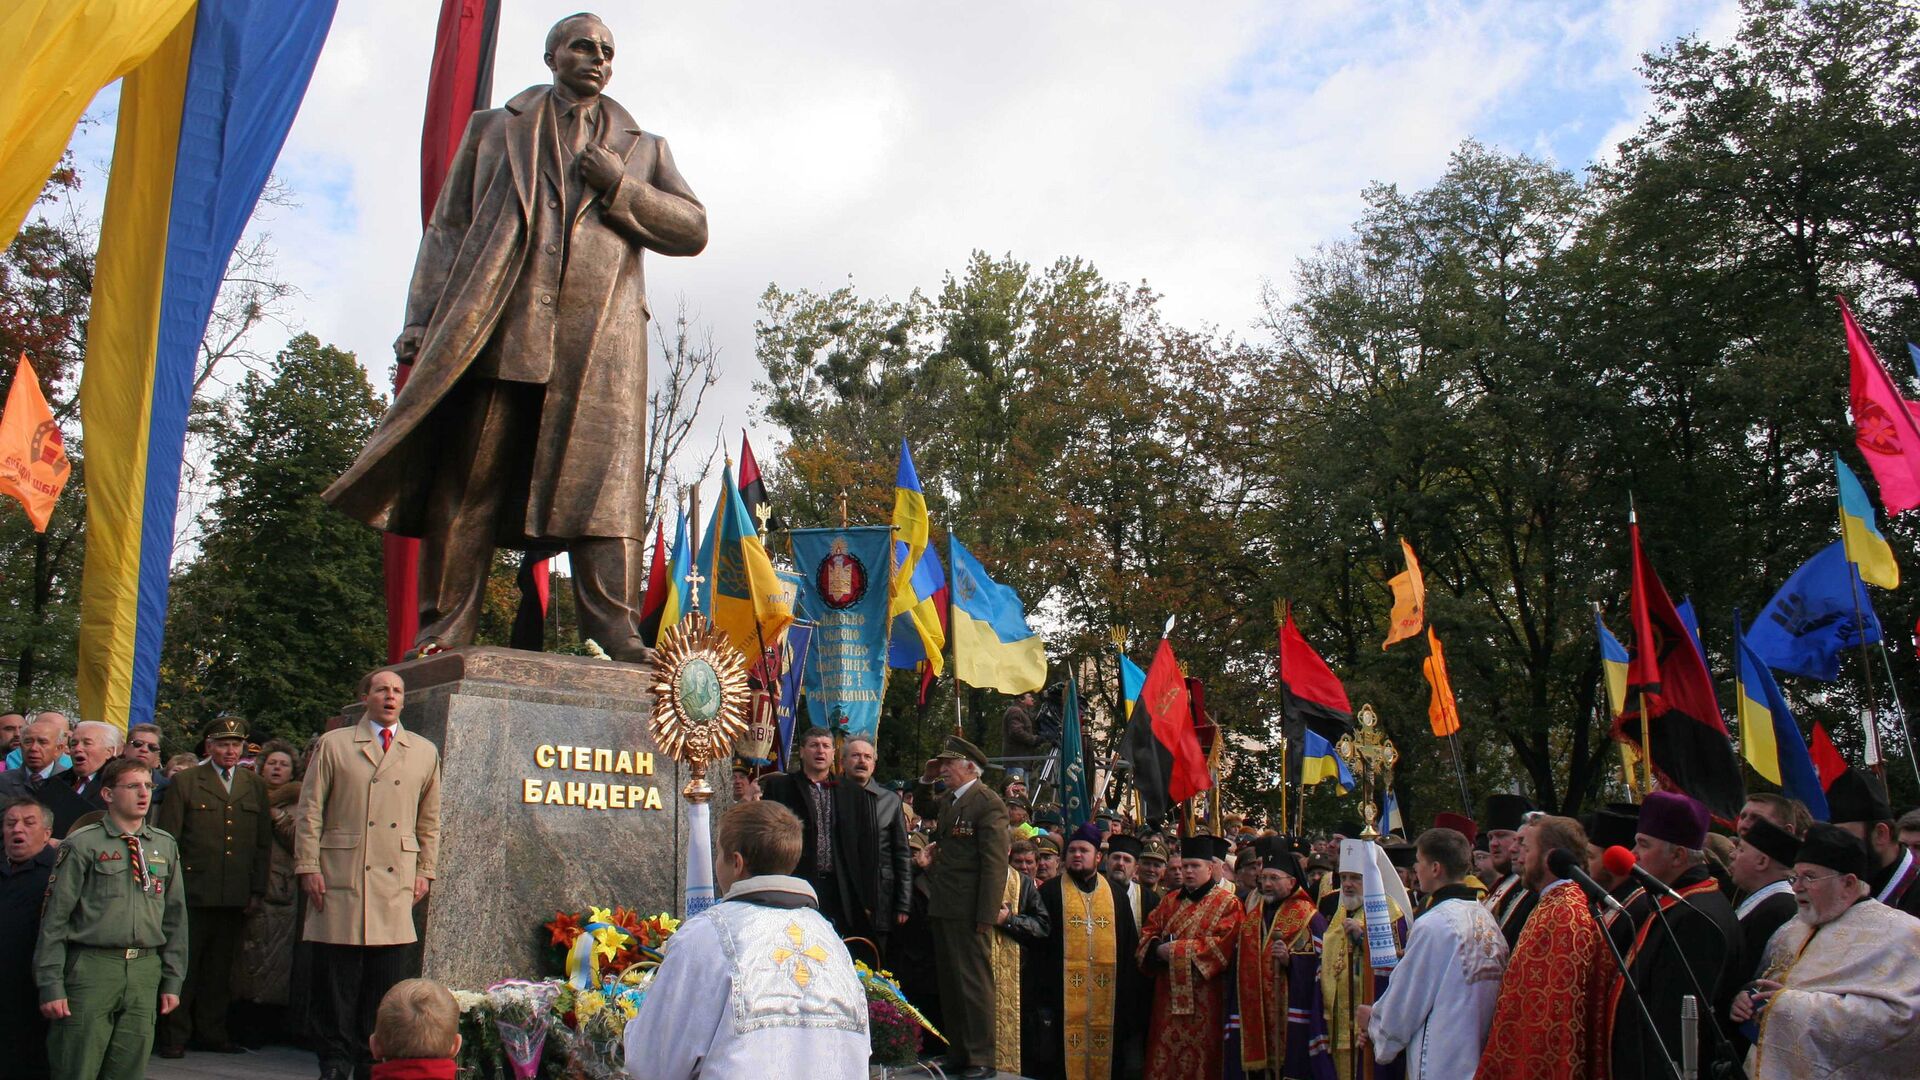 “Місто Лева”: ідеологічний центр України, чи польська периферія